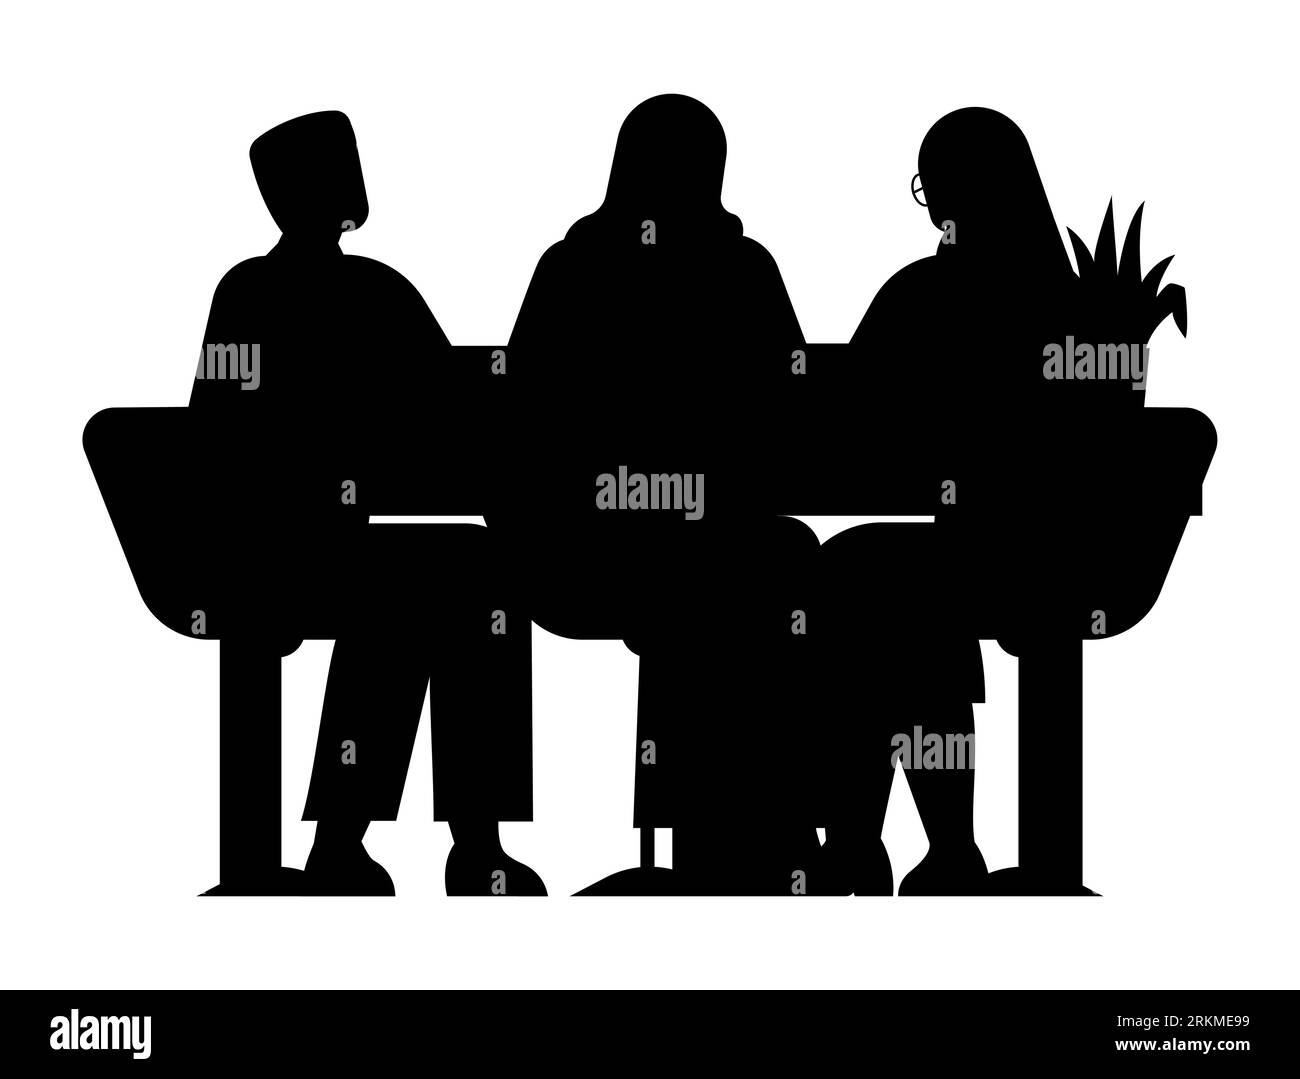 Silhouette noire d'une réunion de groupe, employés parlant de projets, gens d'affaires brainstorming des concepts, vecteur isolé sur fond blanc Illustration de Vecteur